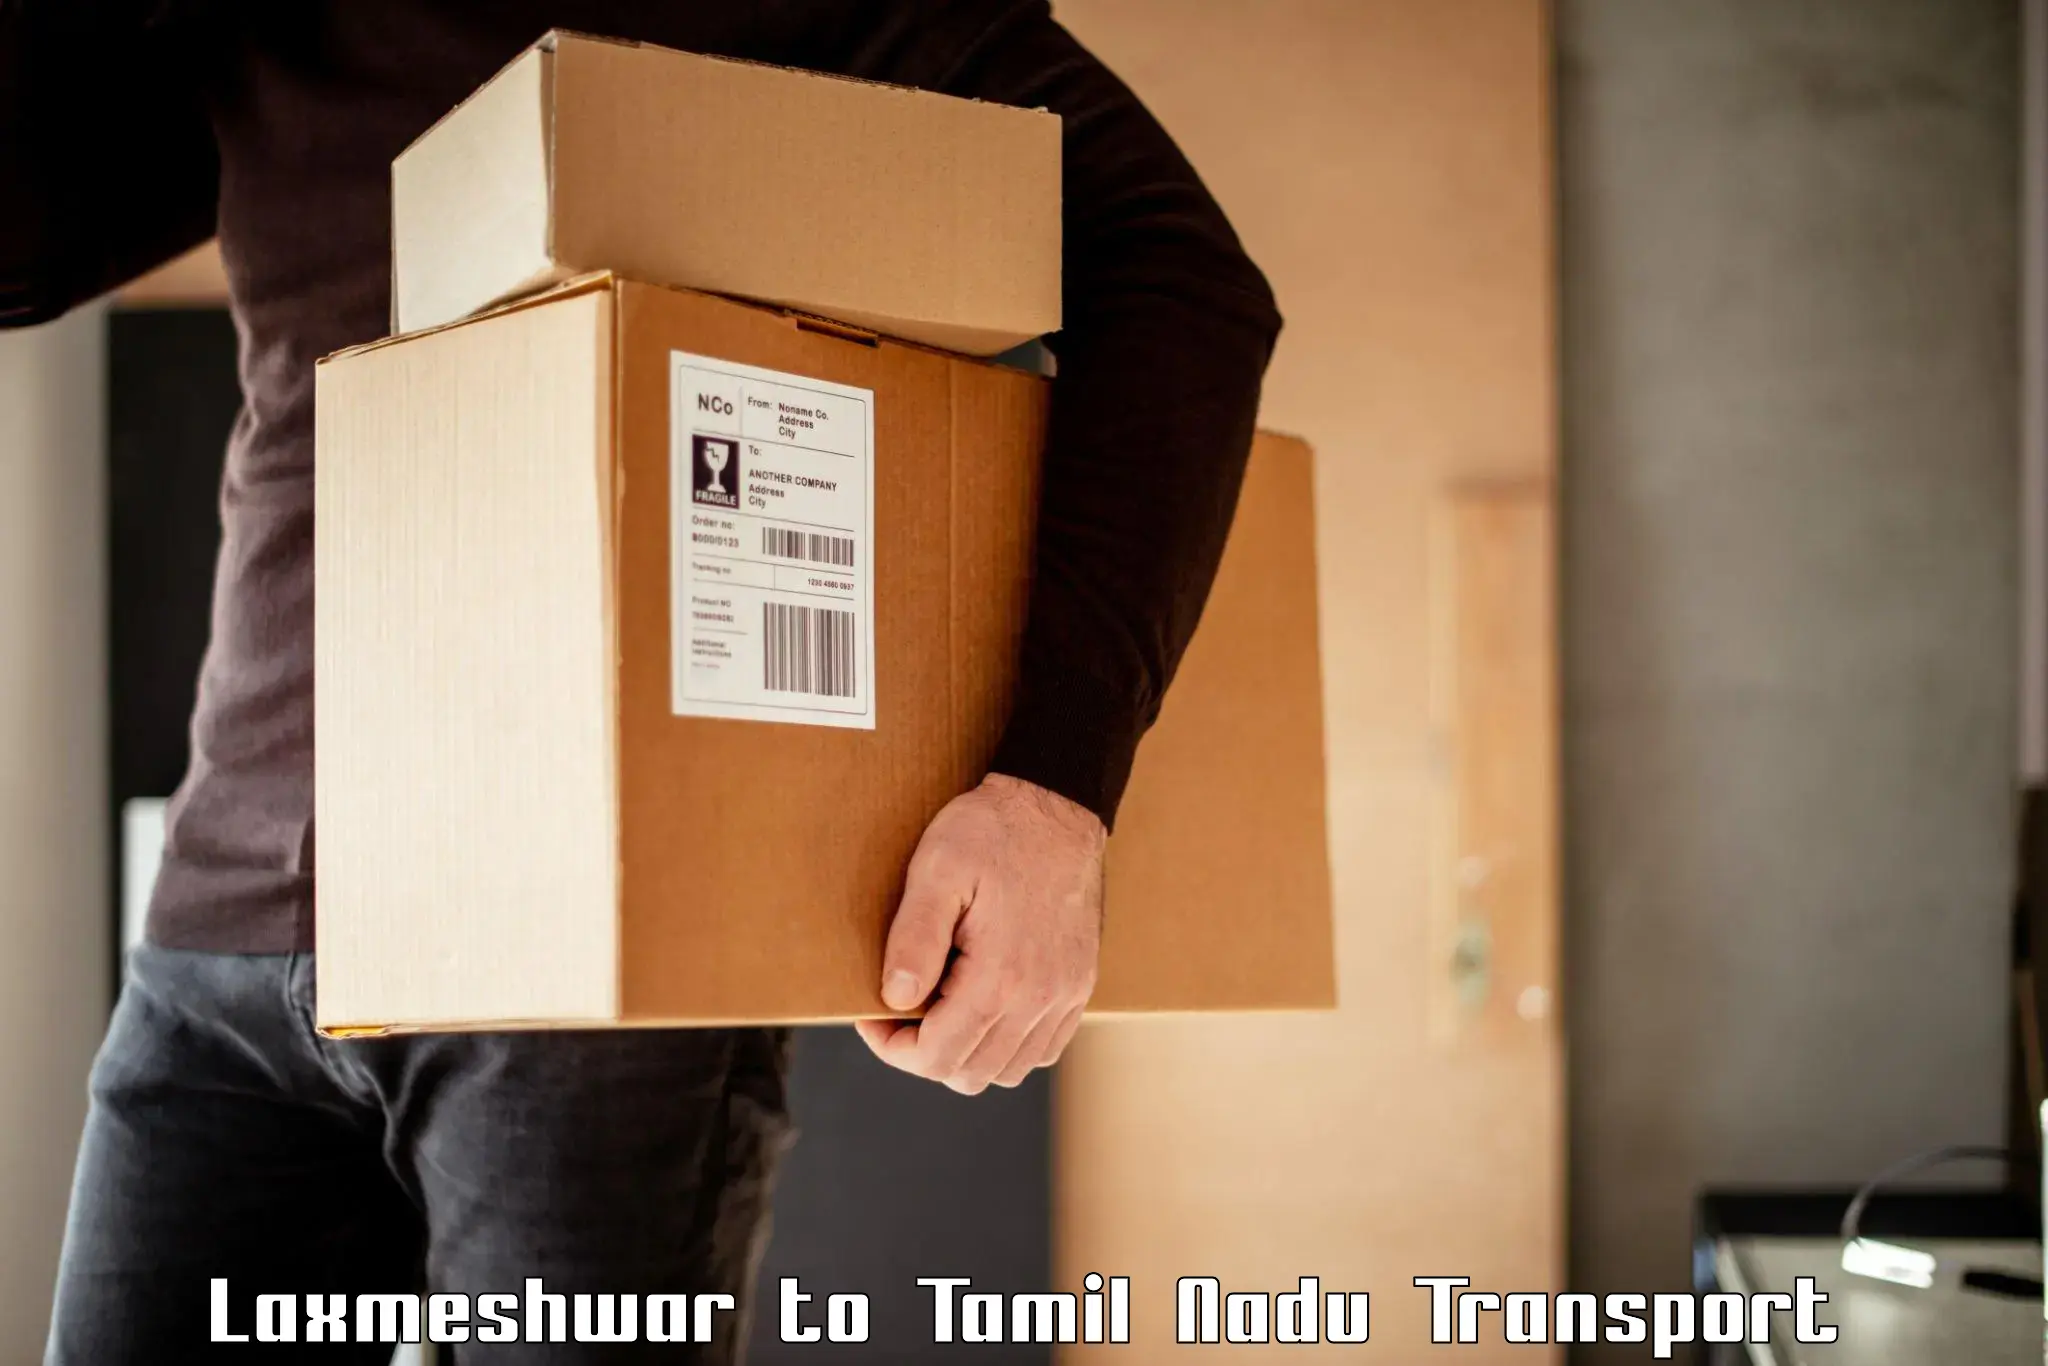 Luggage transport services Laxmeshwar to Vickramasingapuram